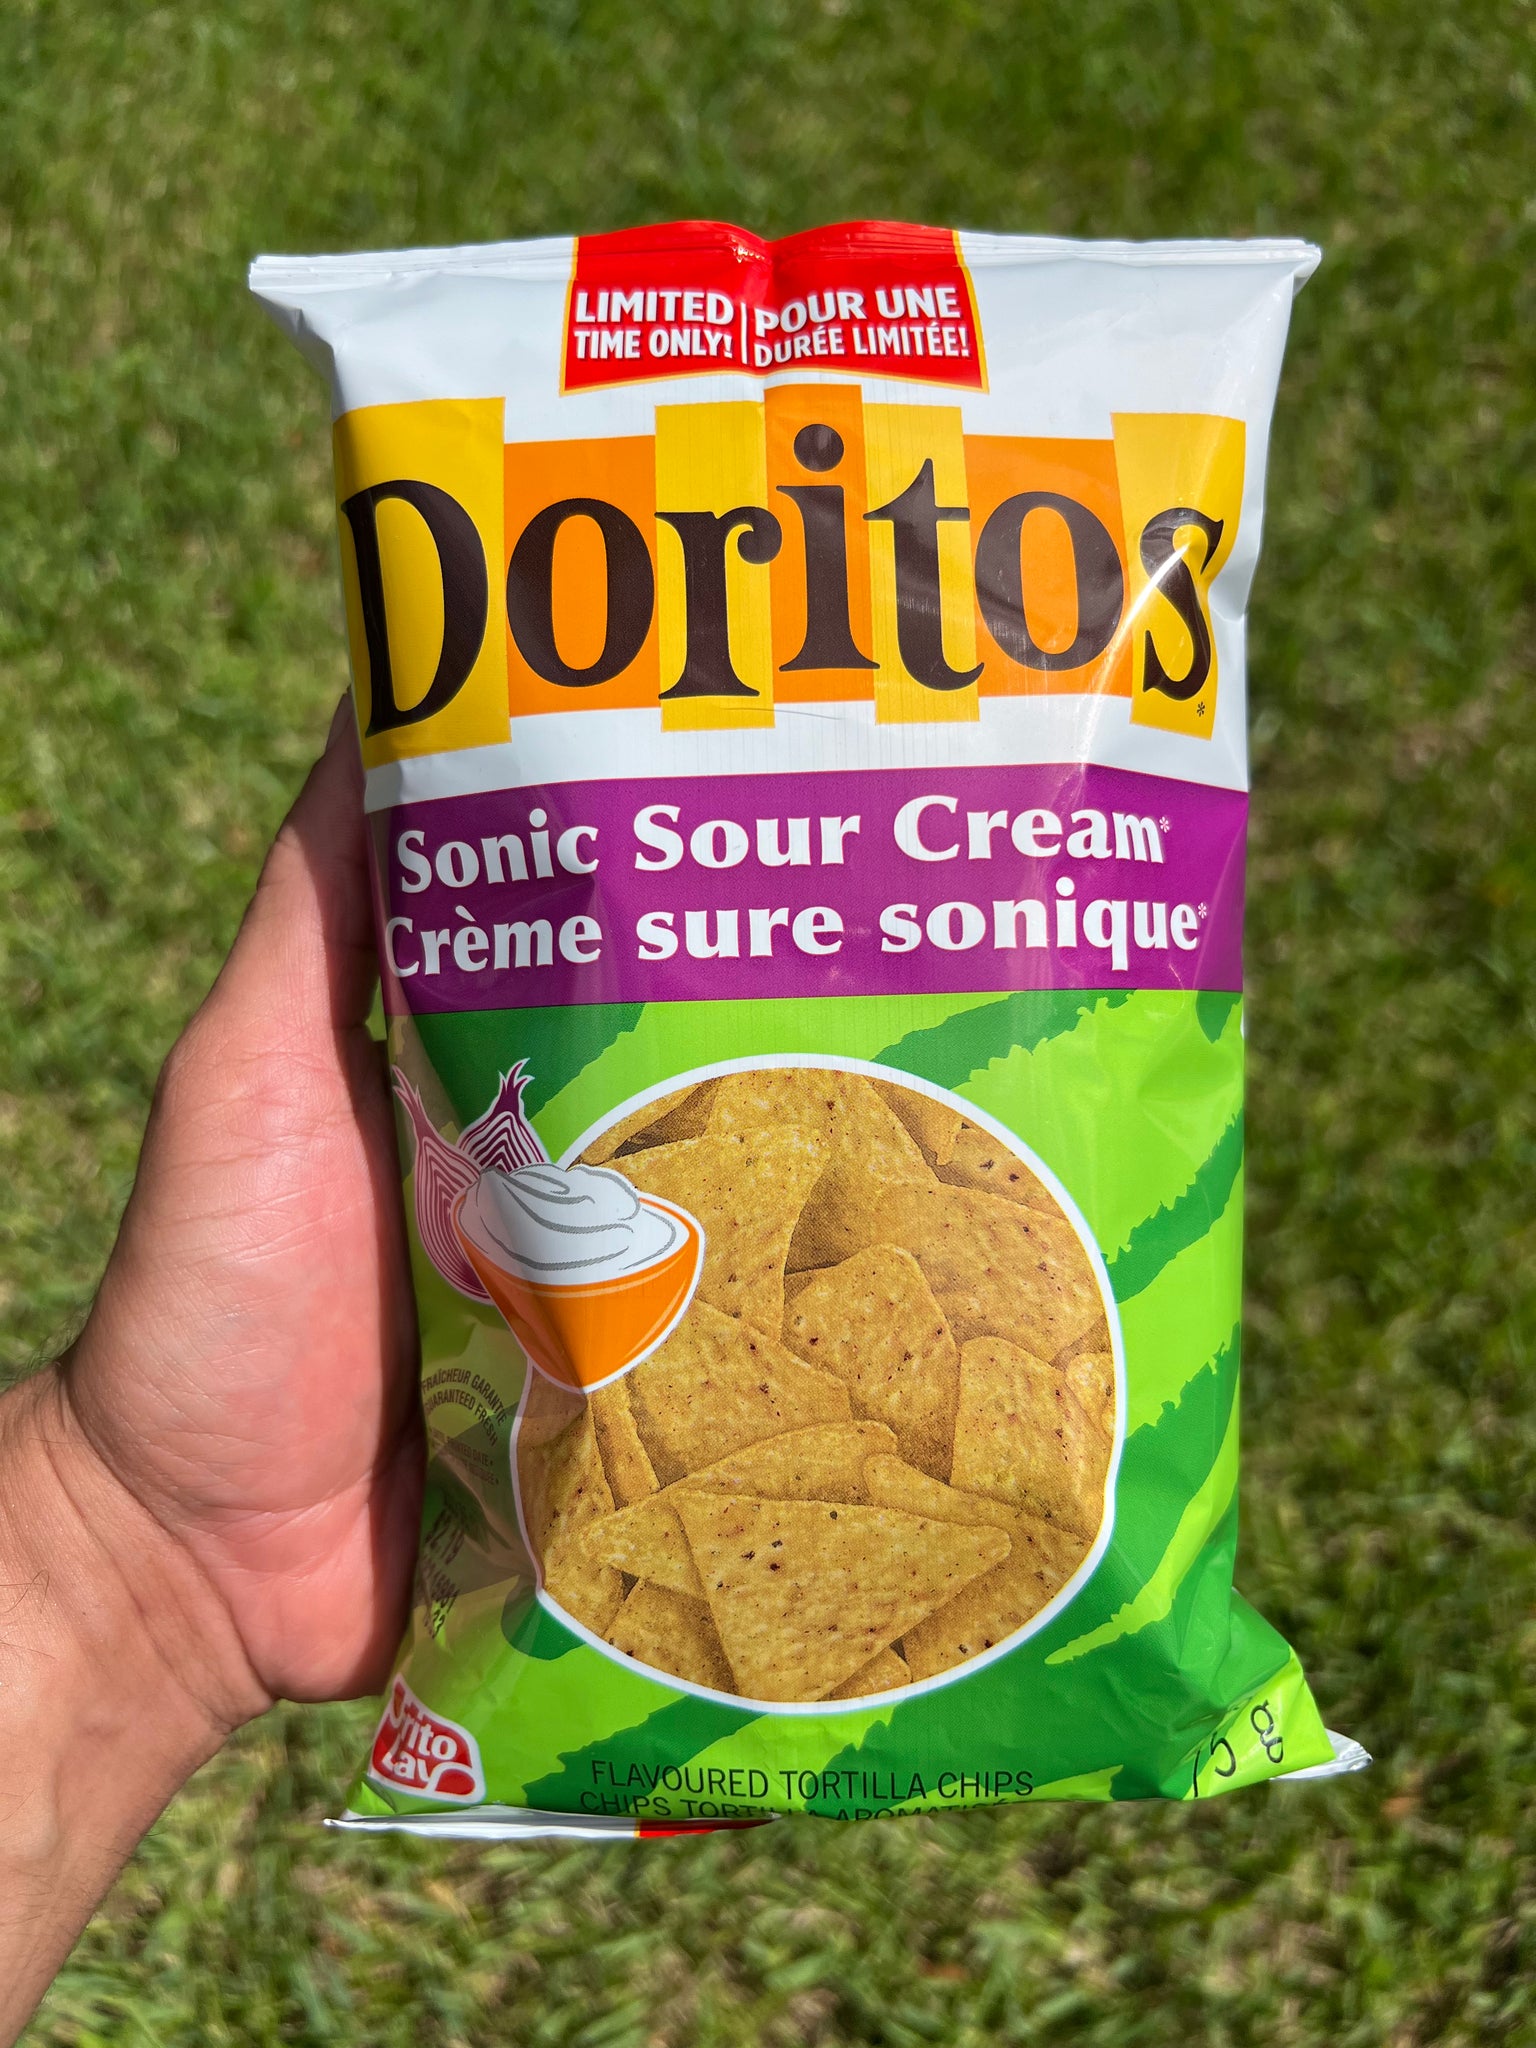 Doritos Sonic Sour Cream (Canada)